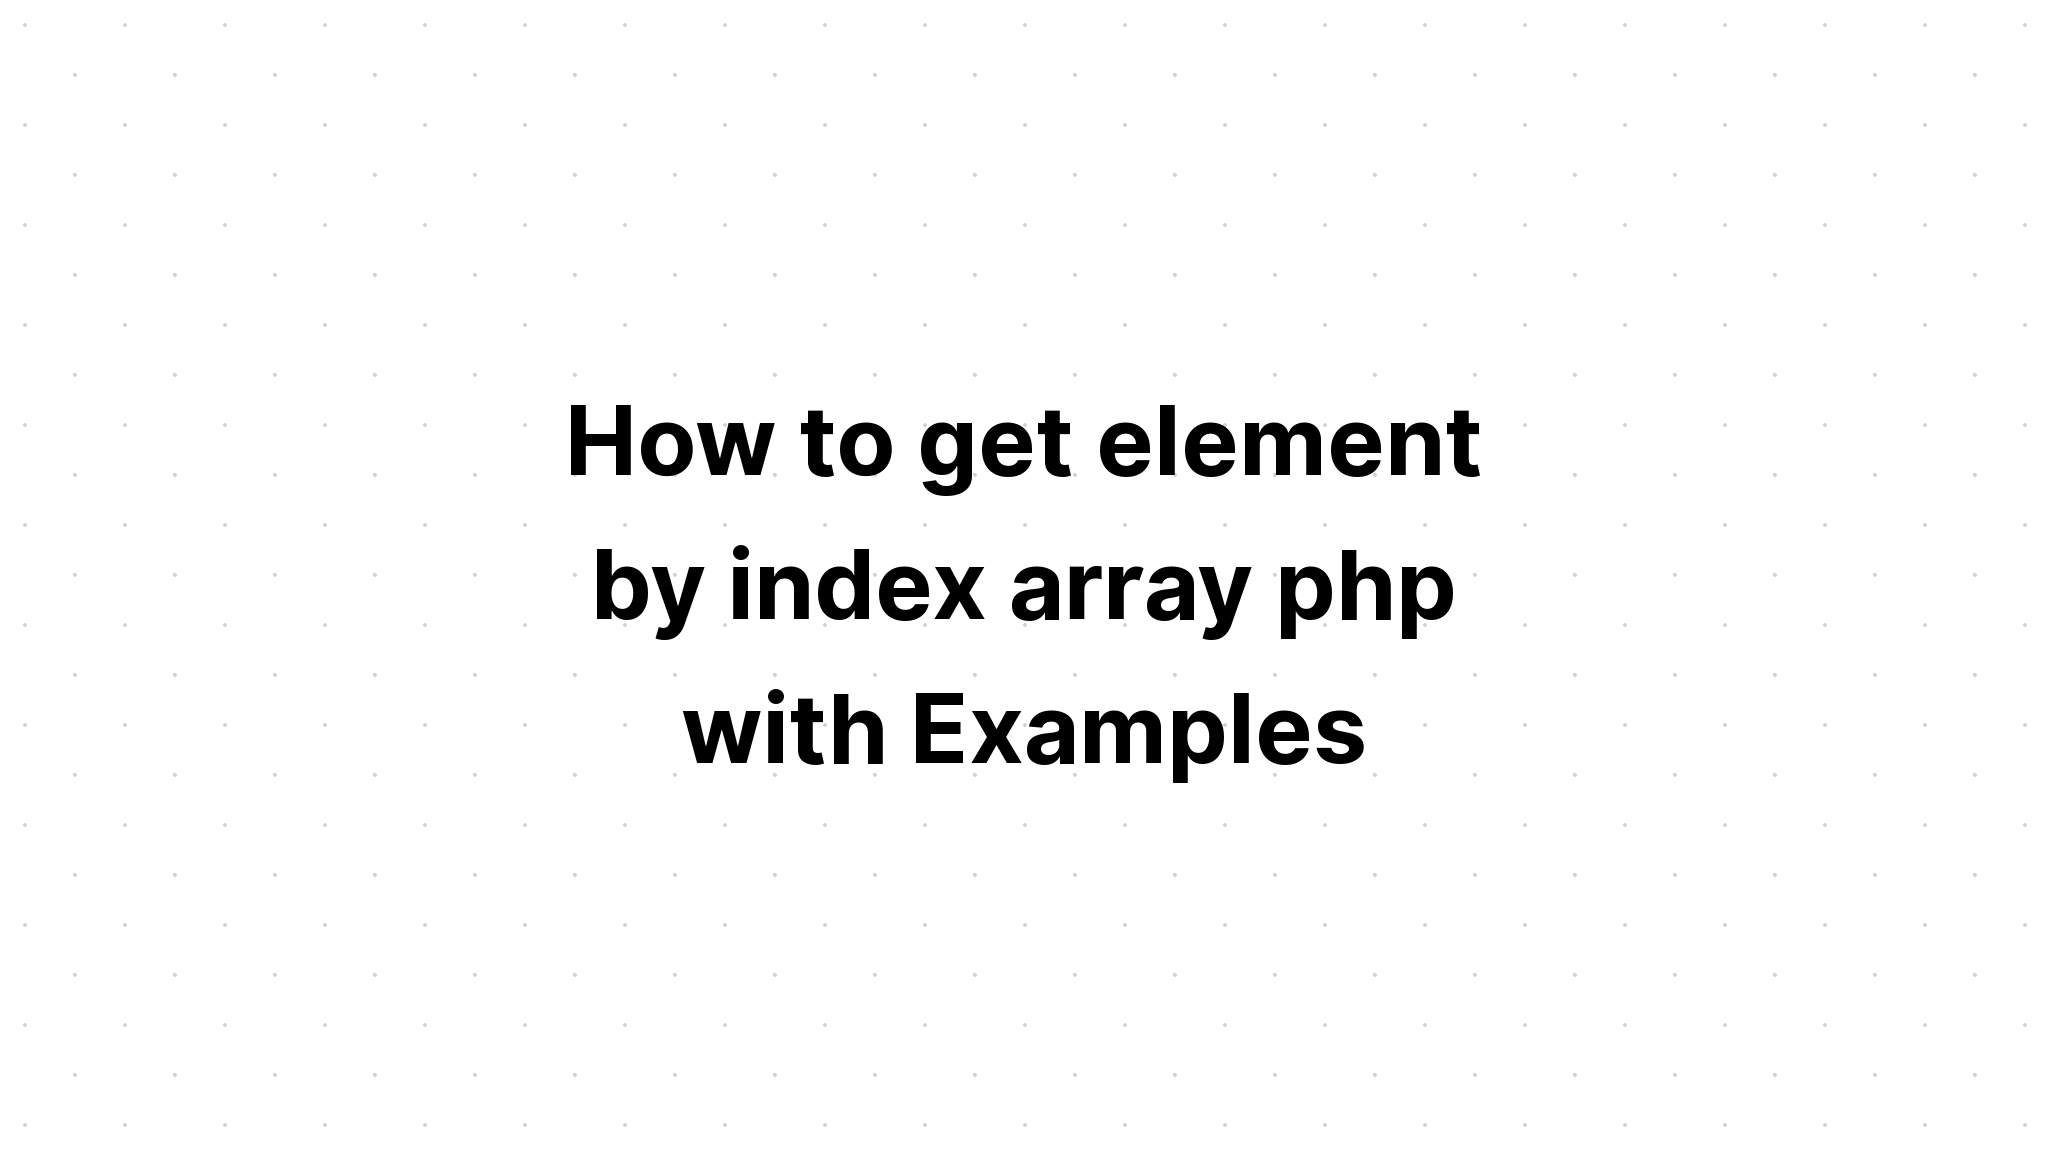 Cara mendapatkan elemen dengan indeks array php dengan Contoh